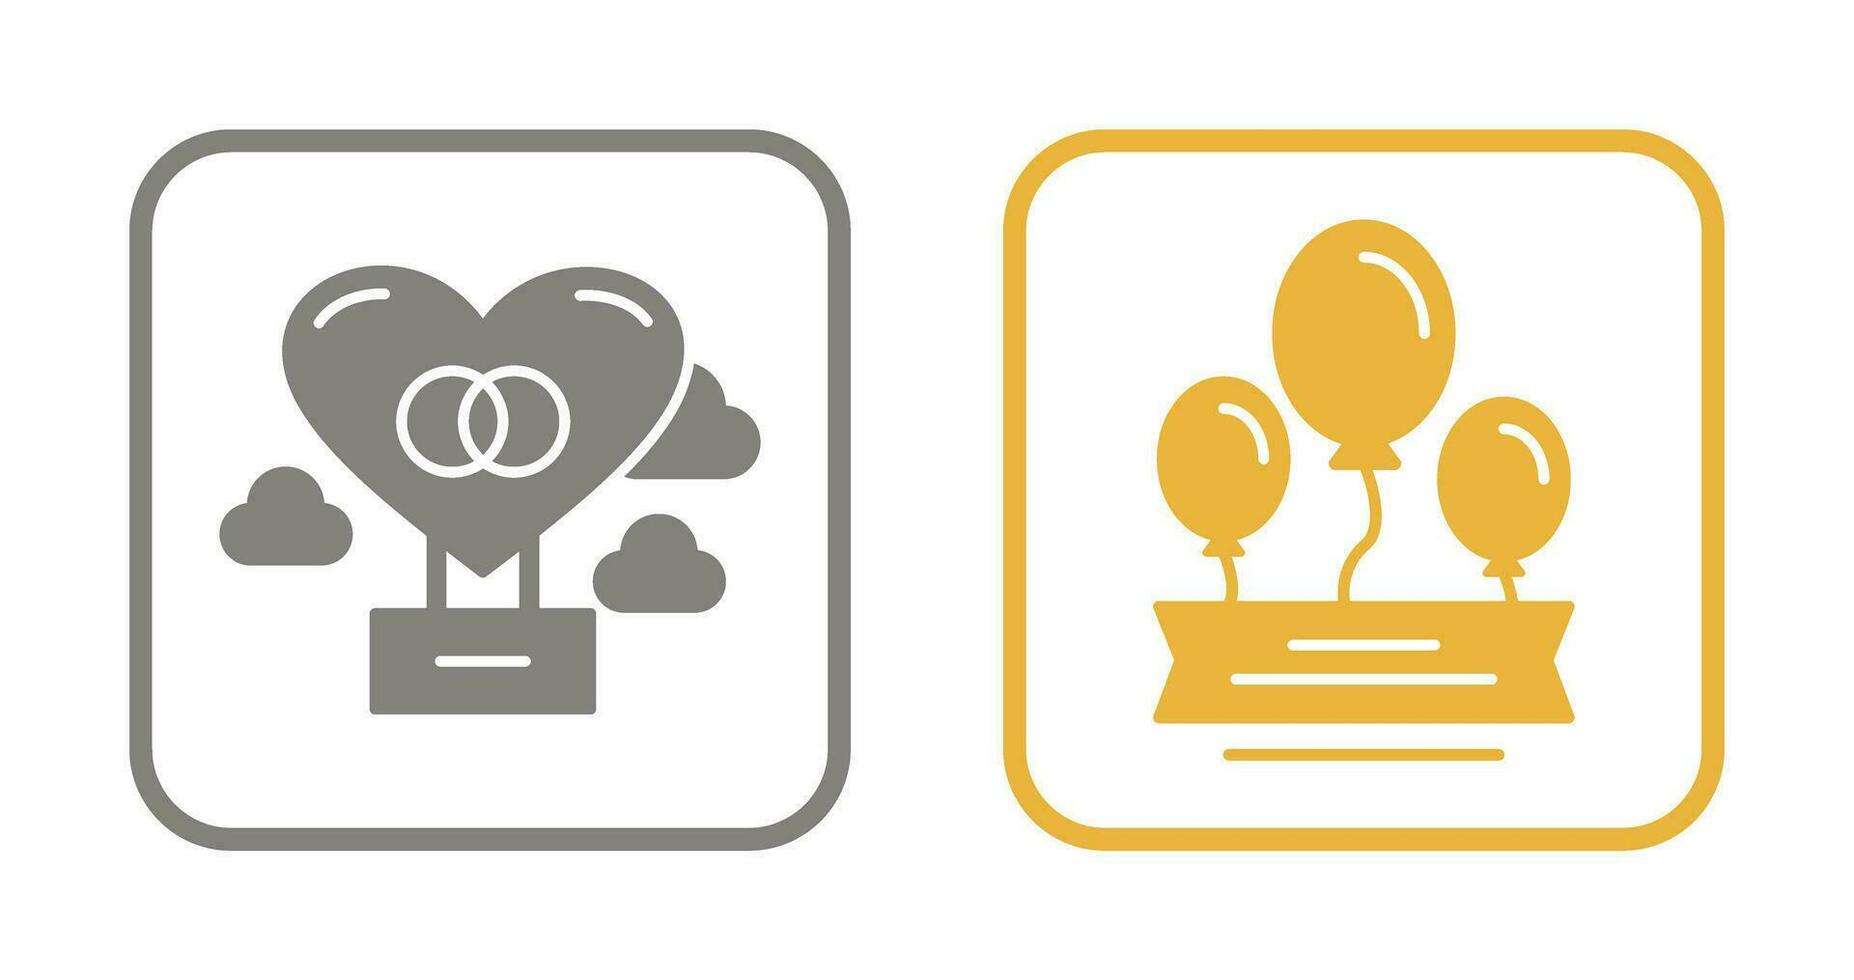 Hot Air Balloon and Balloons Icon vector